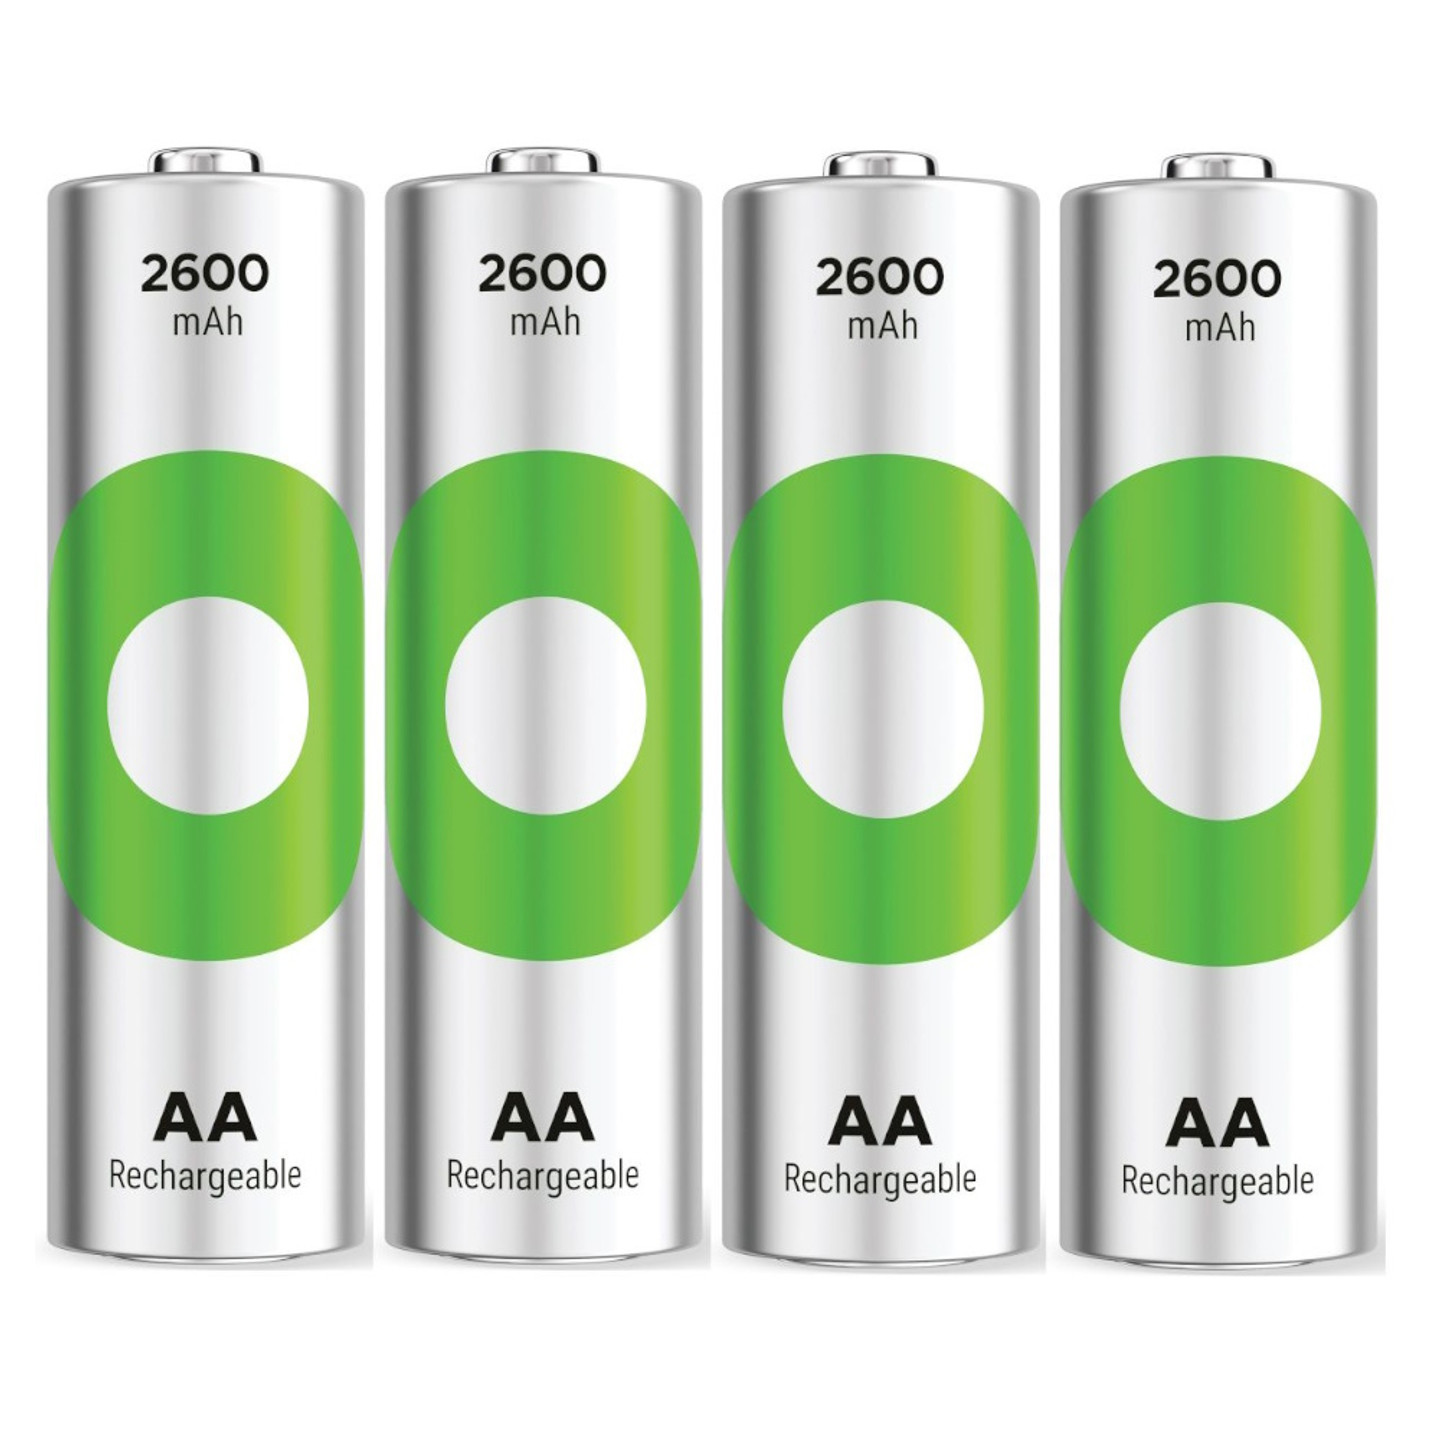 GP Batteries ReCyko+ 2600mAh AA Rechargeable Batteries